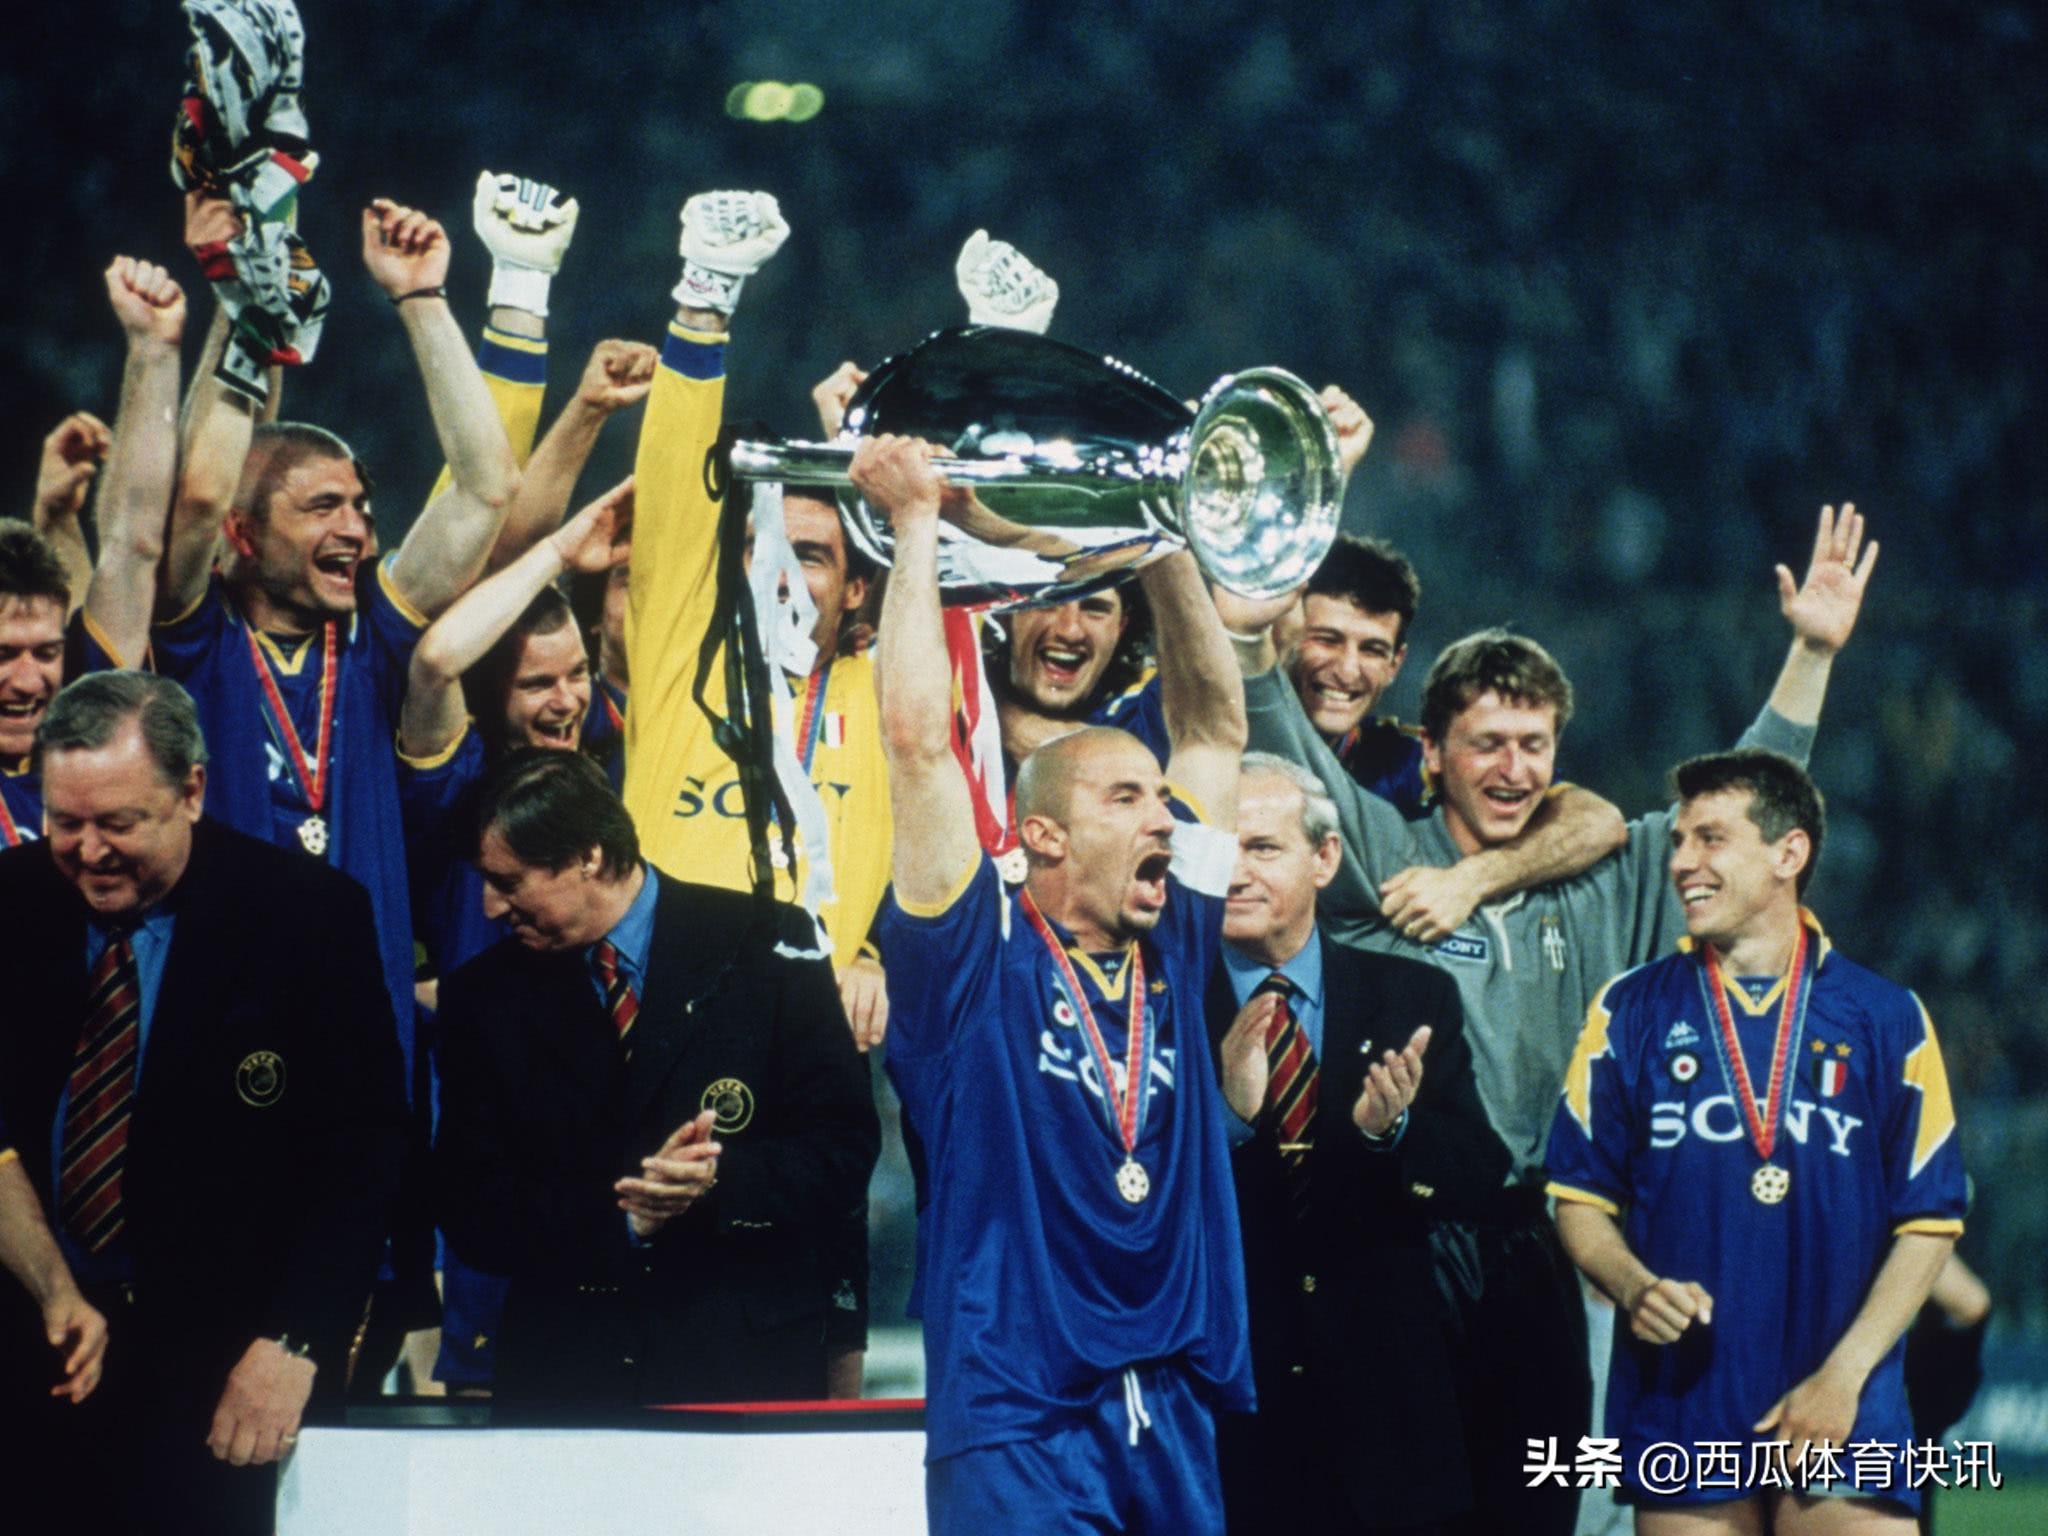 欧冠决赛阿贾克斯尤文图斯 96年欧冠决赛回忆——尤文图斯(2)